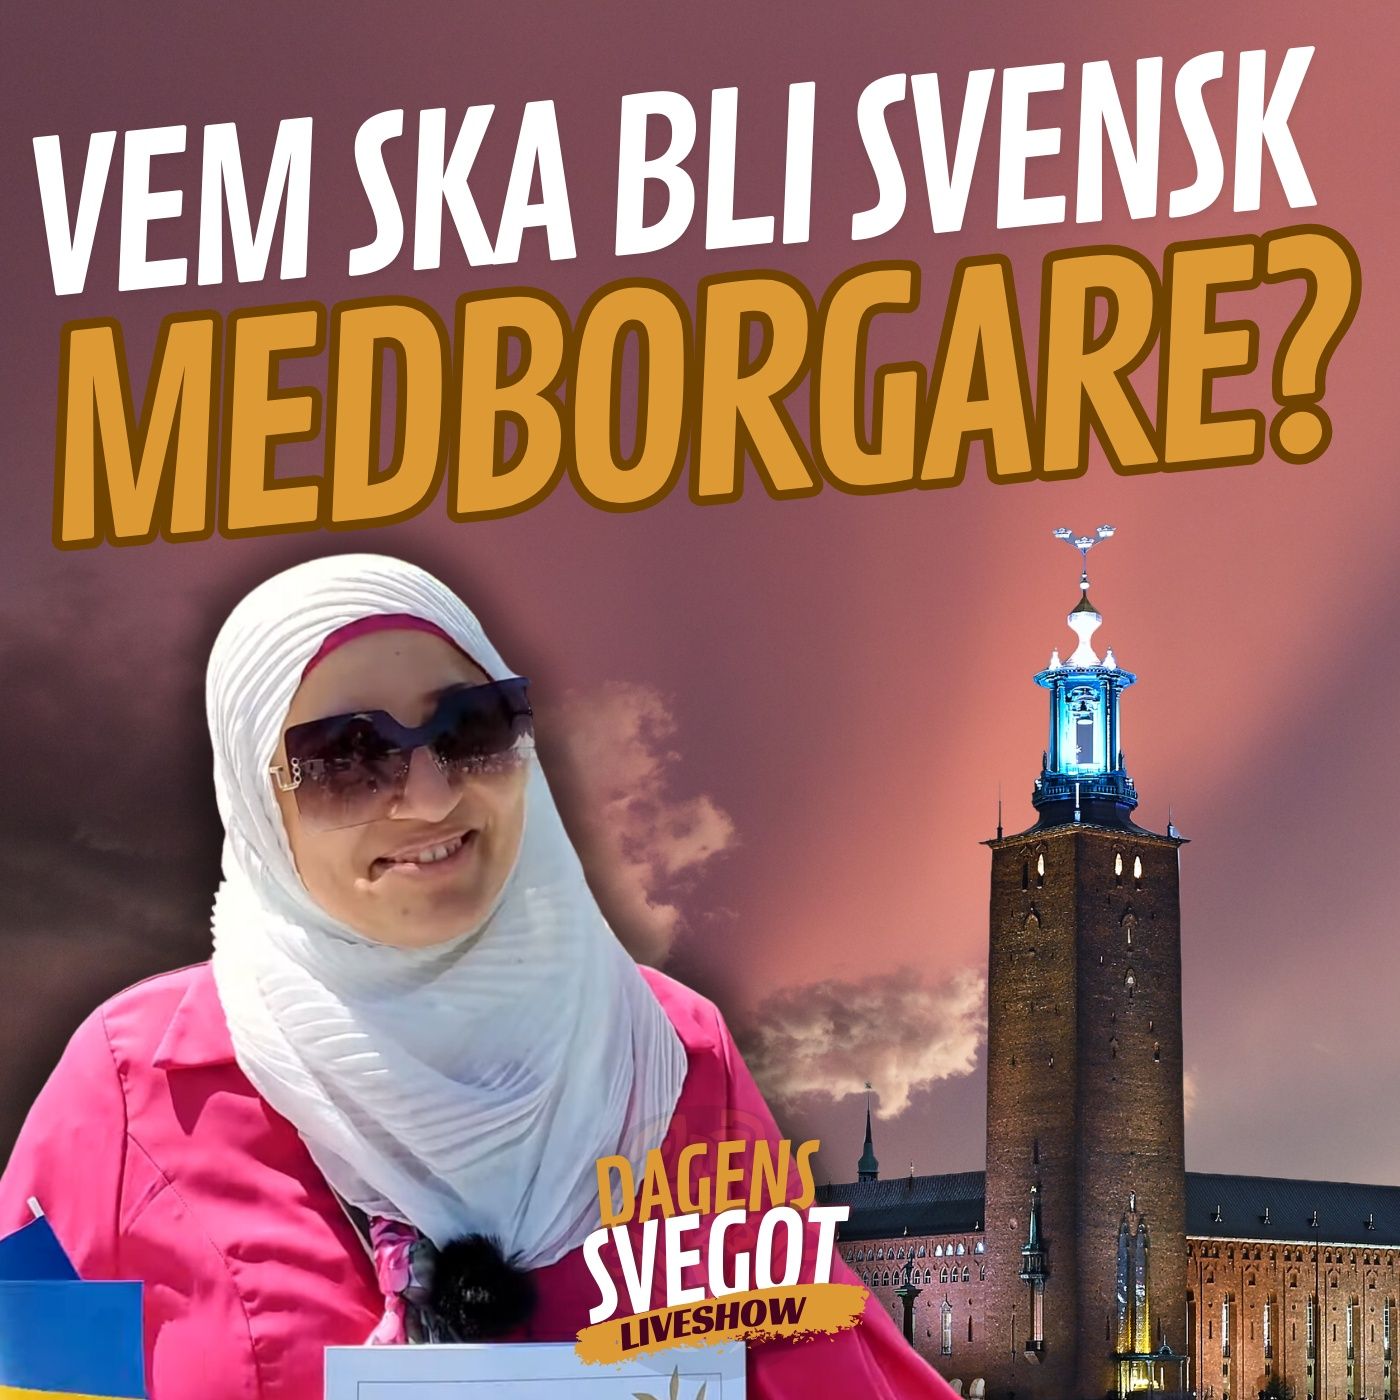 Att bli svensk medborgare: Nya regler föreslagna, vad innebär det?